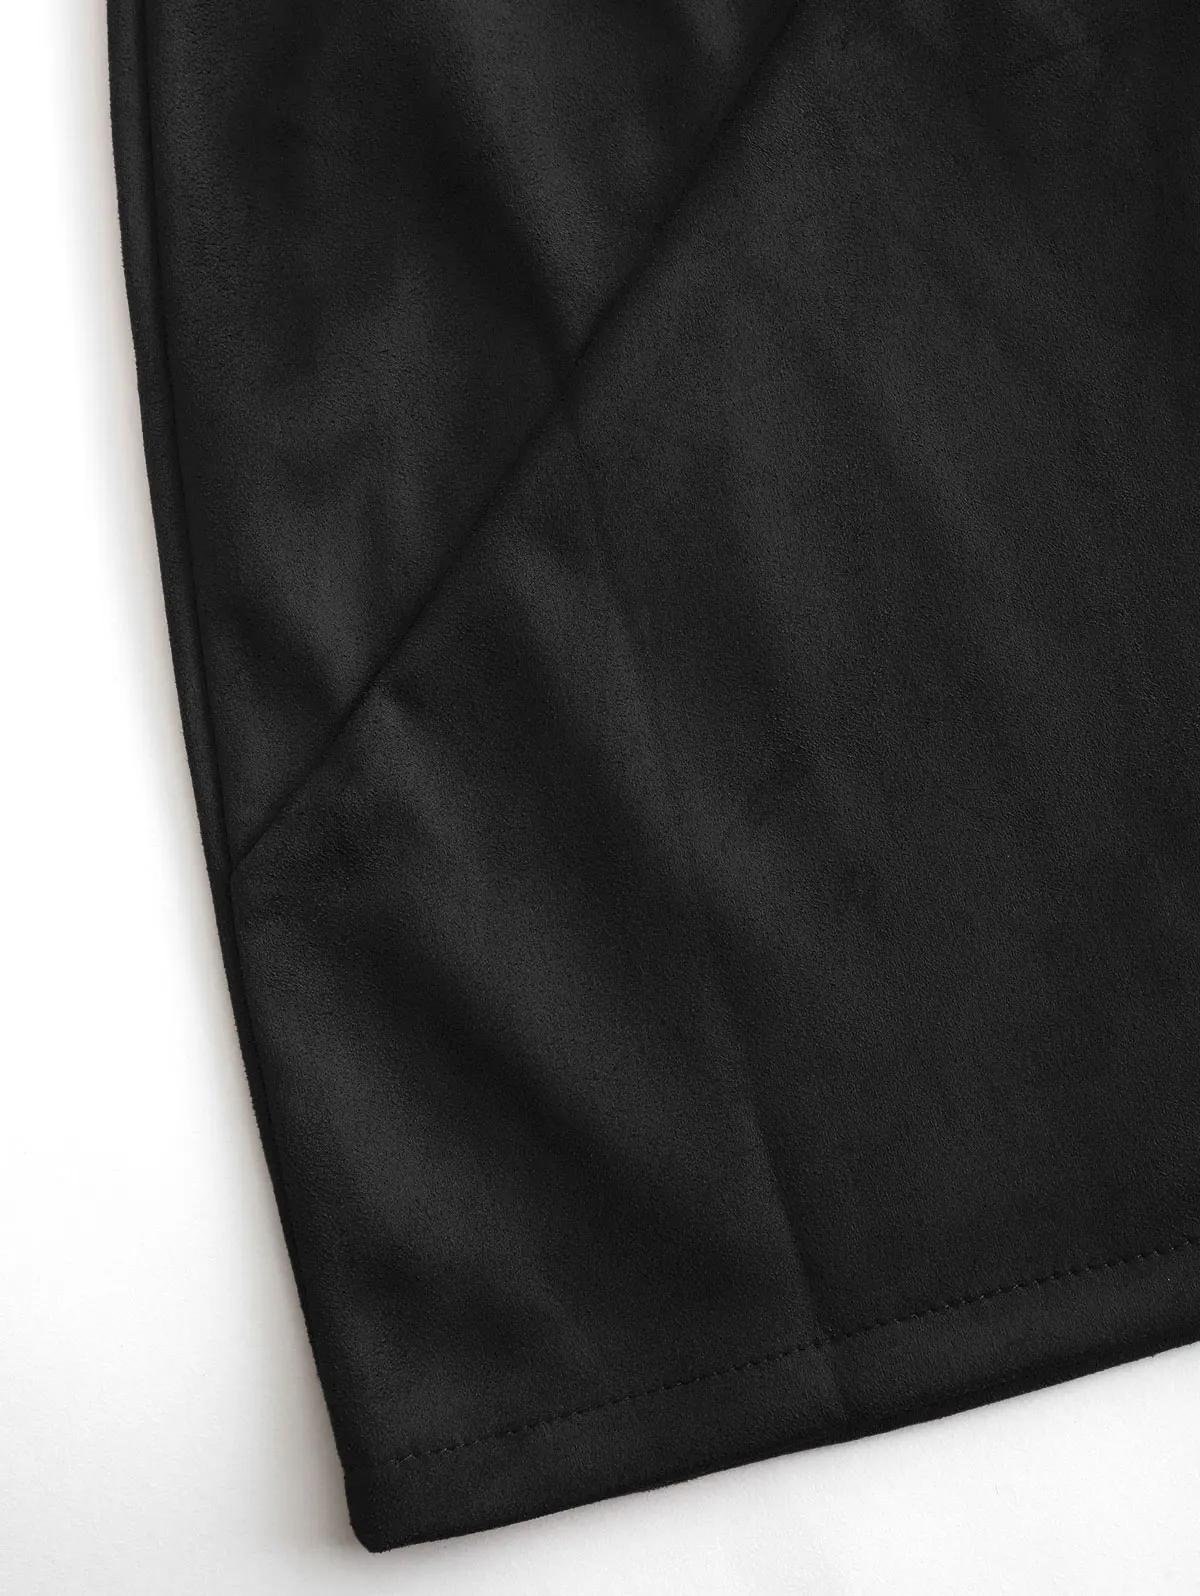 ZAFUL юбка трапециевидной формы из искусственной замши с молнией сзади новая однотонная женская мини-юбка с высокой талией